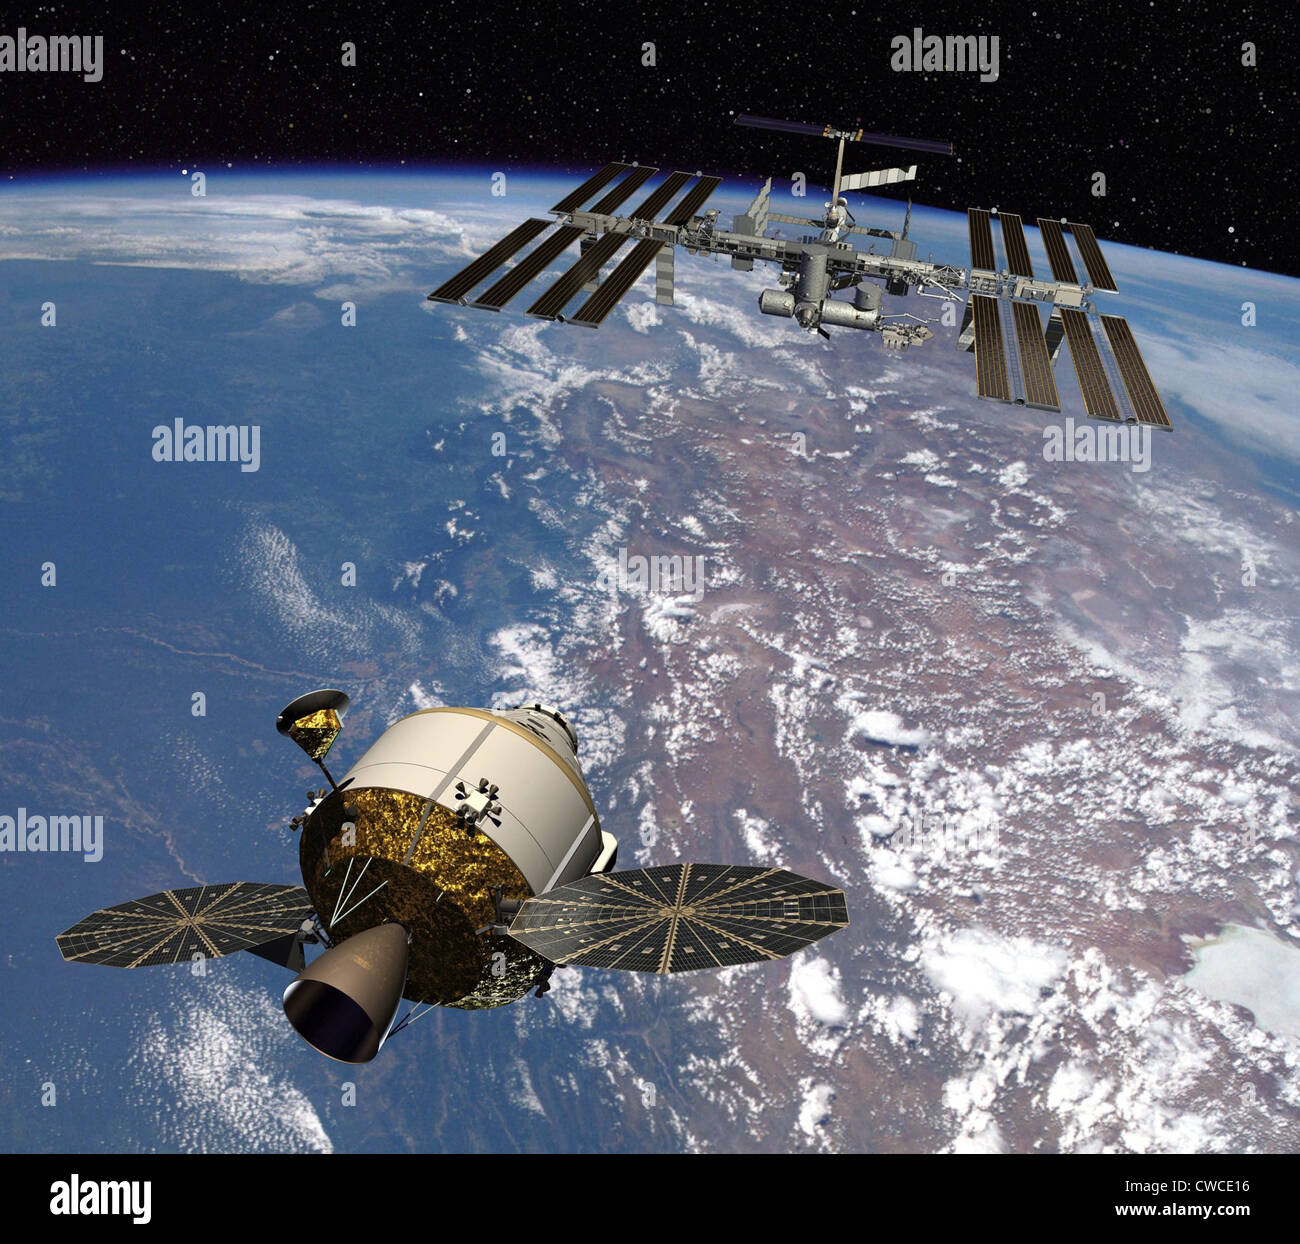 Illustrazione della prossima generazione di veicoli spaziali della NASA, l'Orion equipaggio veicolo di esplorazione, avvicinandosi alla Stazione Spaziale Internazionale Foto Stock